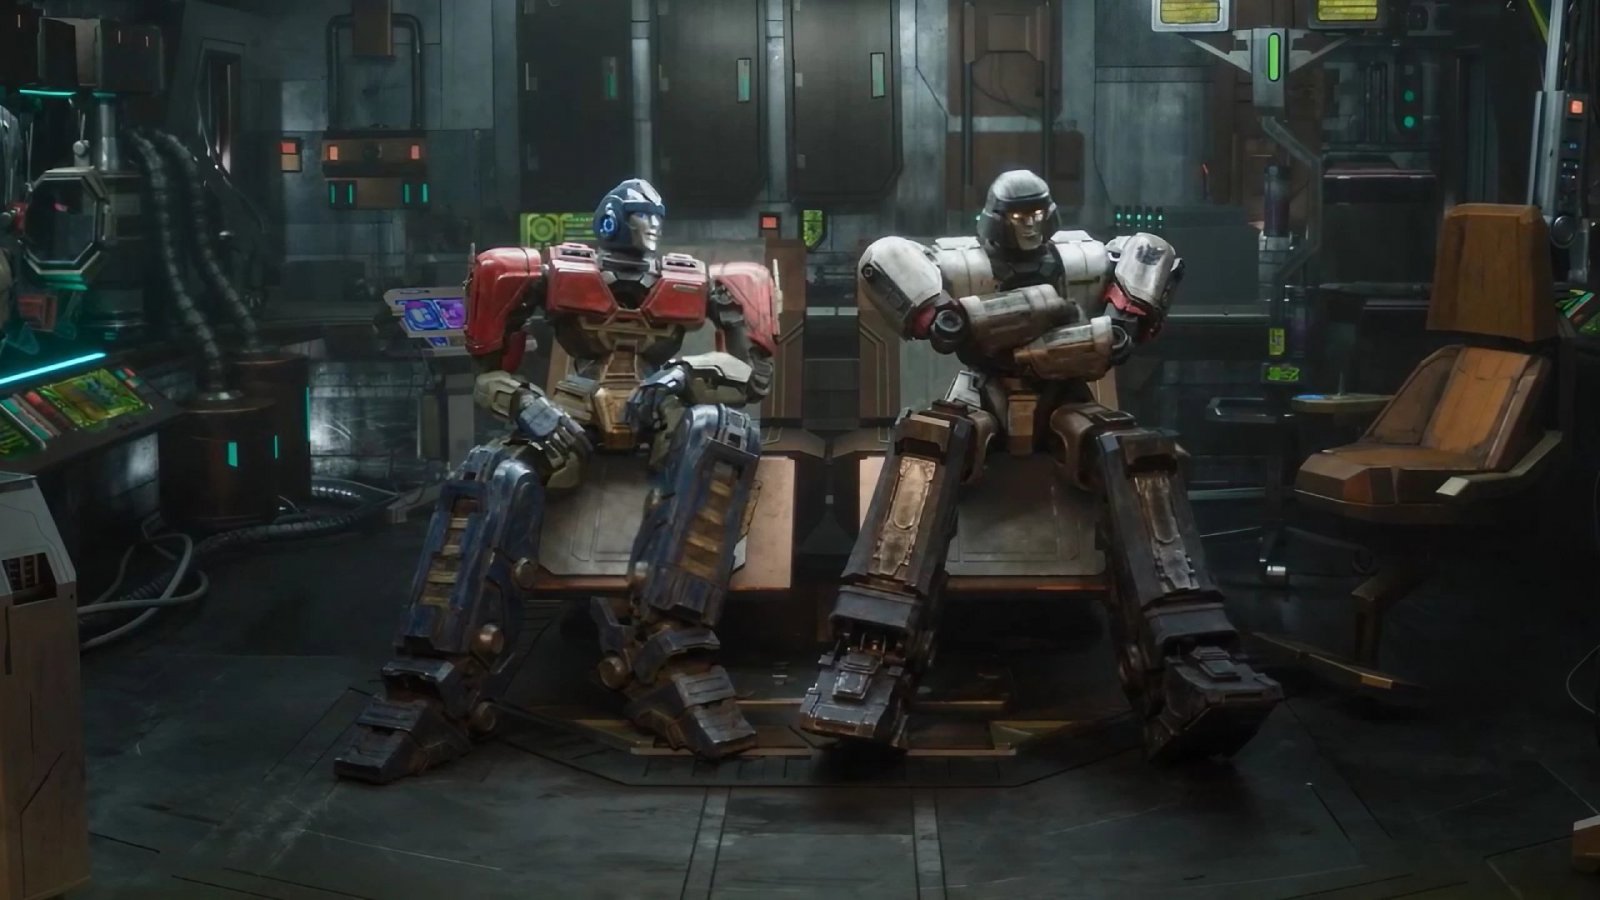 Transformers: One, trailer italiano per il film sul passato di Optimus Prime e Megatron